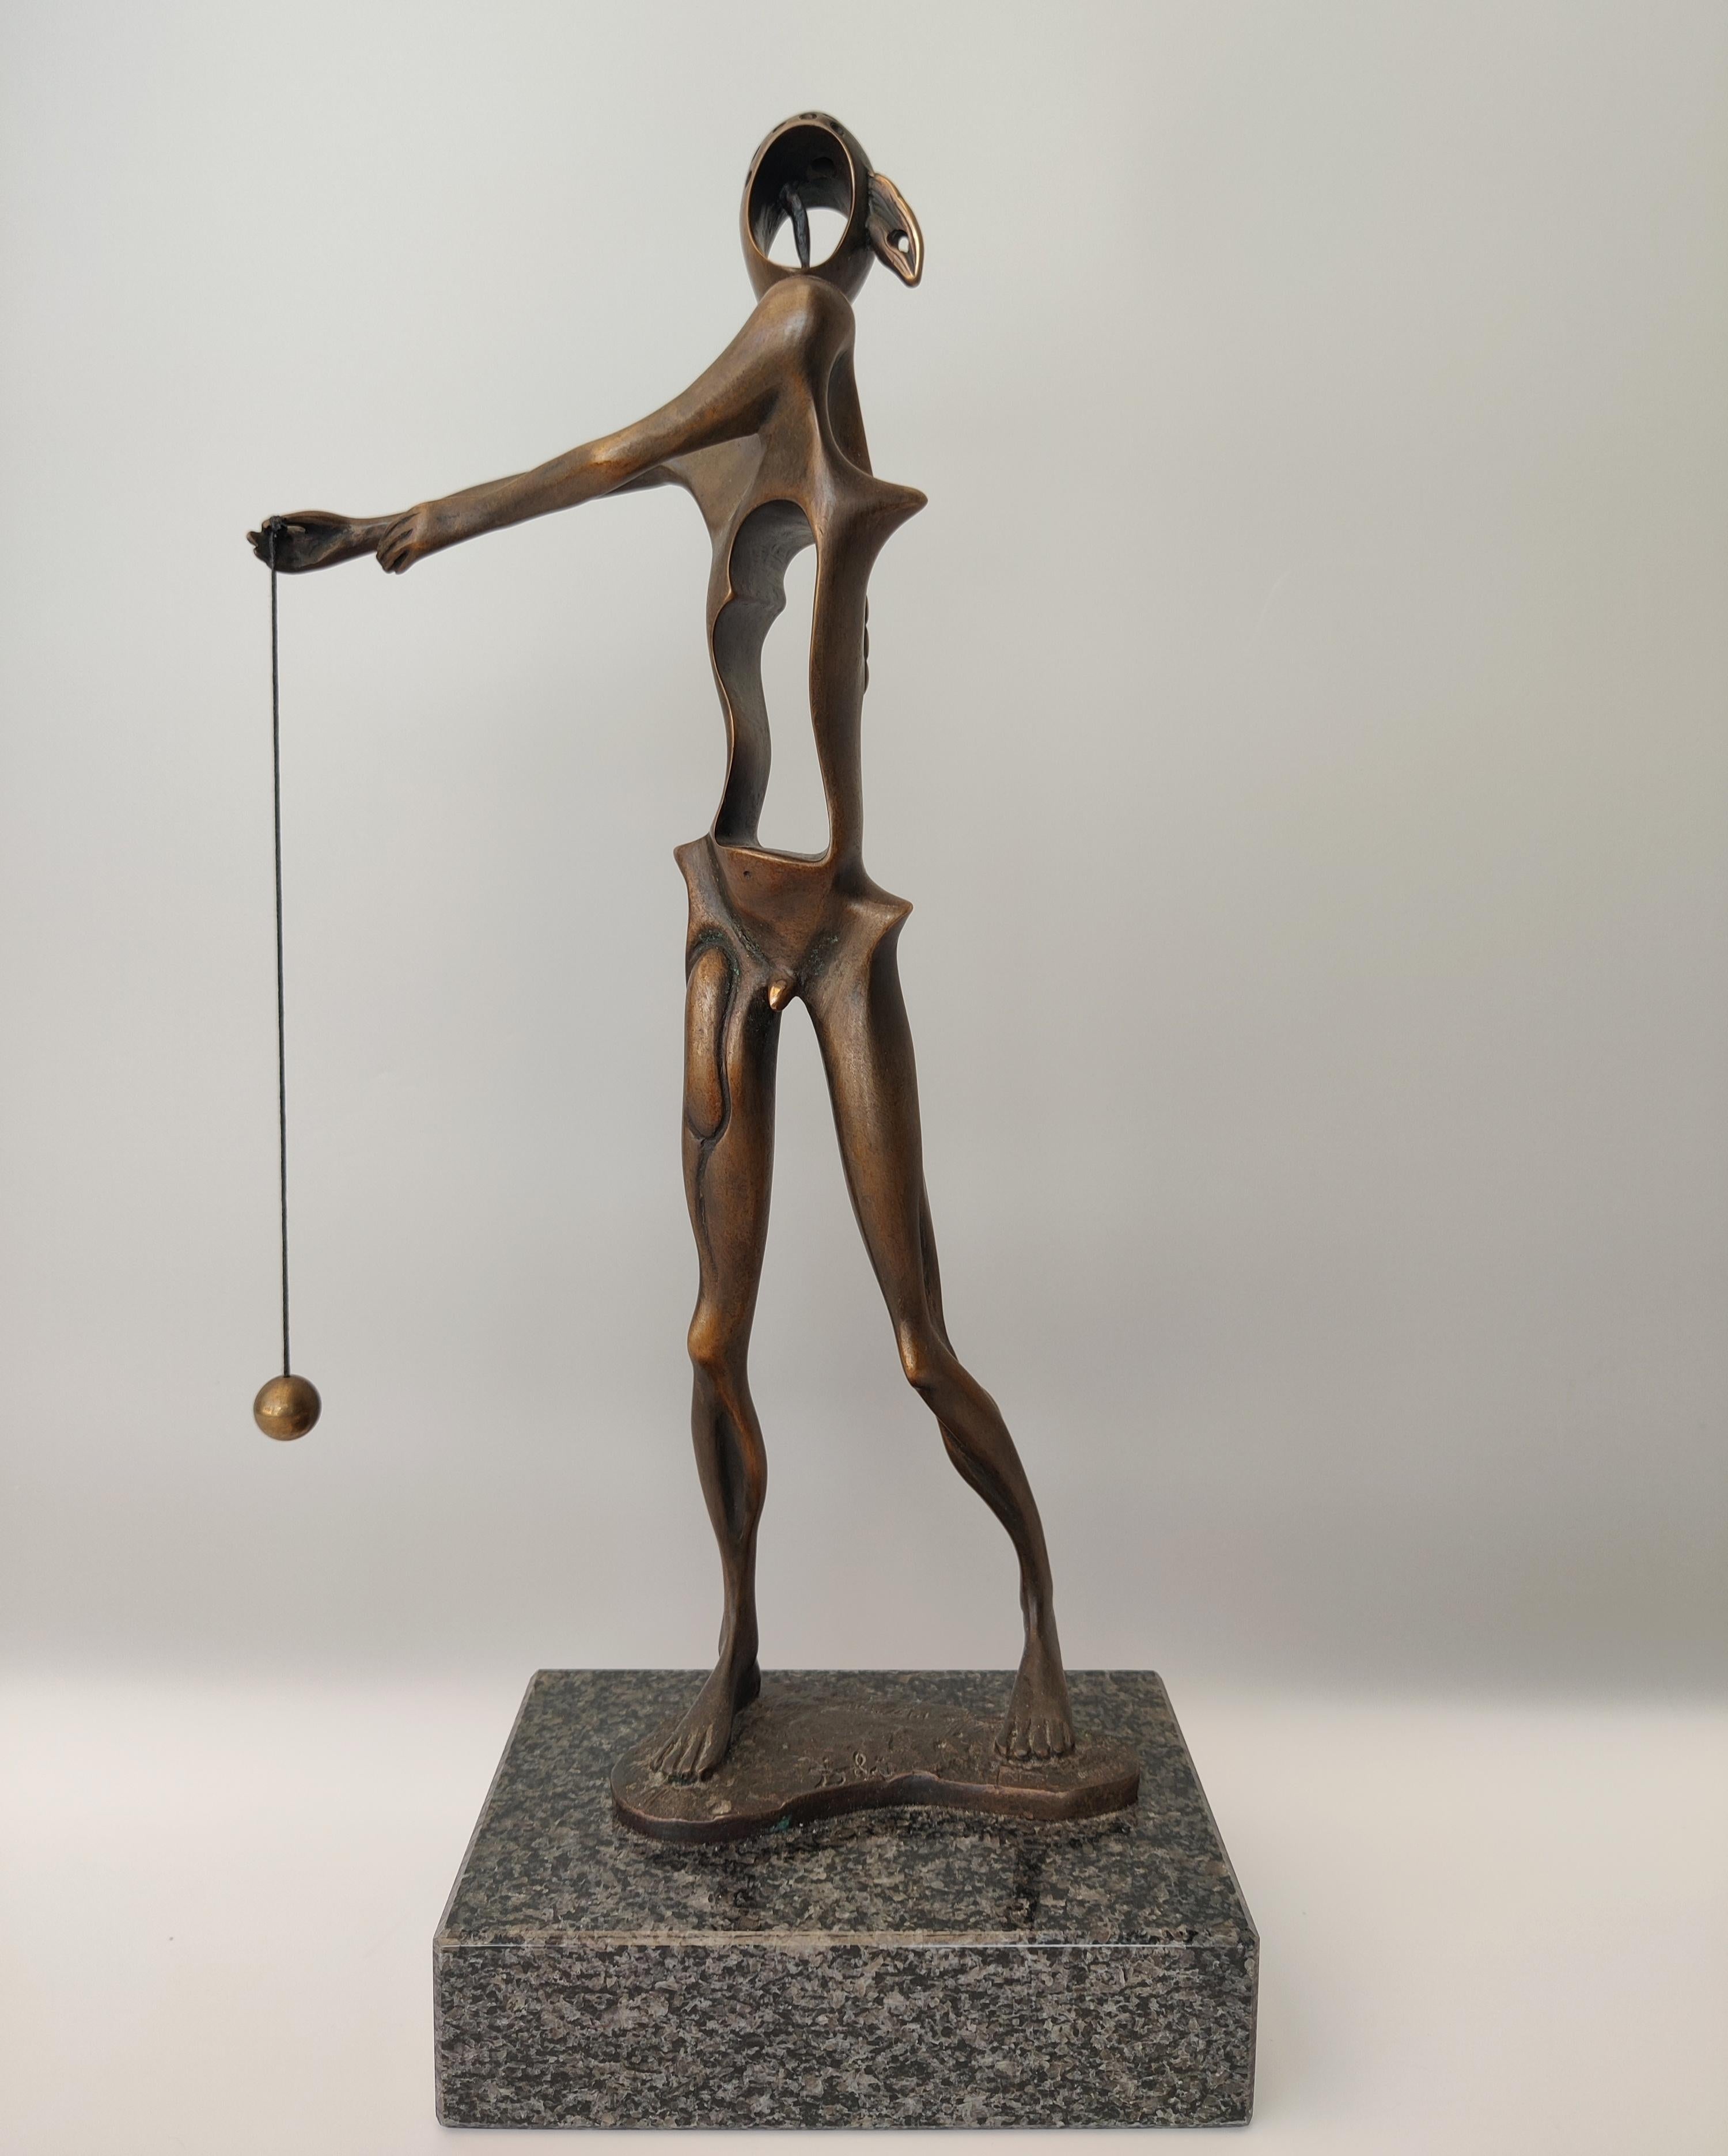 Salvador Dalí 
Hommage à Newton
Taille : 35 x 16 x 11 cm
Edition 197/350 patine brune
Date de création : 1980
Première distribution : 1980
Date de la distribution : 2010
MATERIAL : bronze
Fonderie : Perseo, Suisse
COA de la fonderie

Cette sculpture